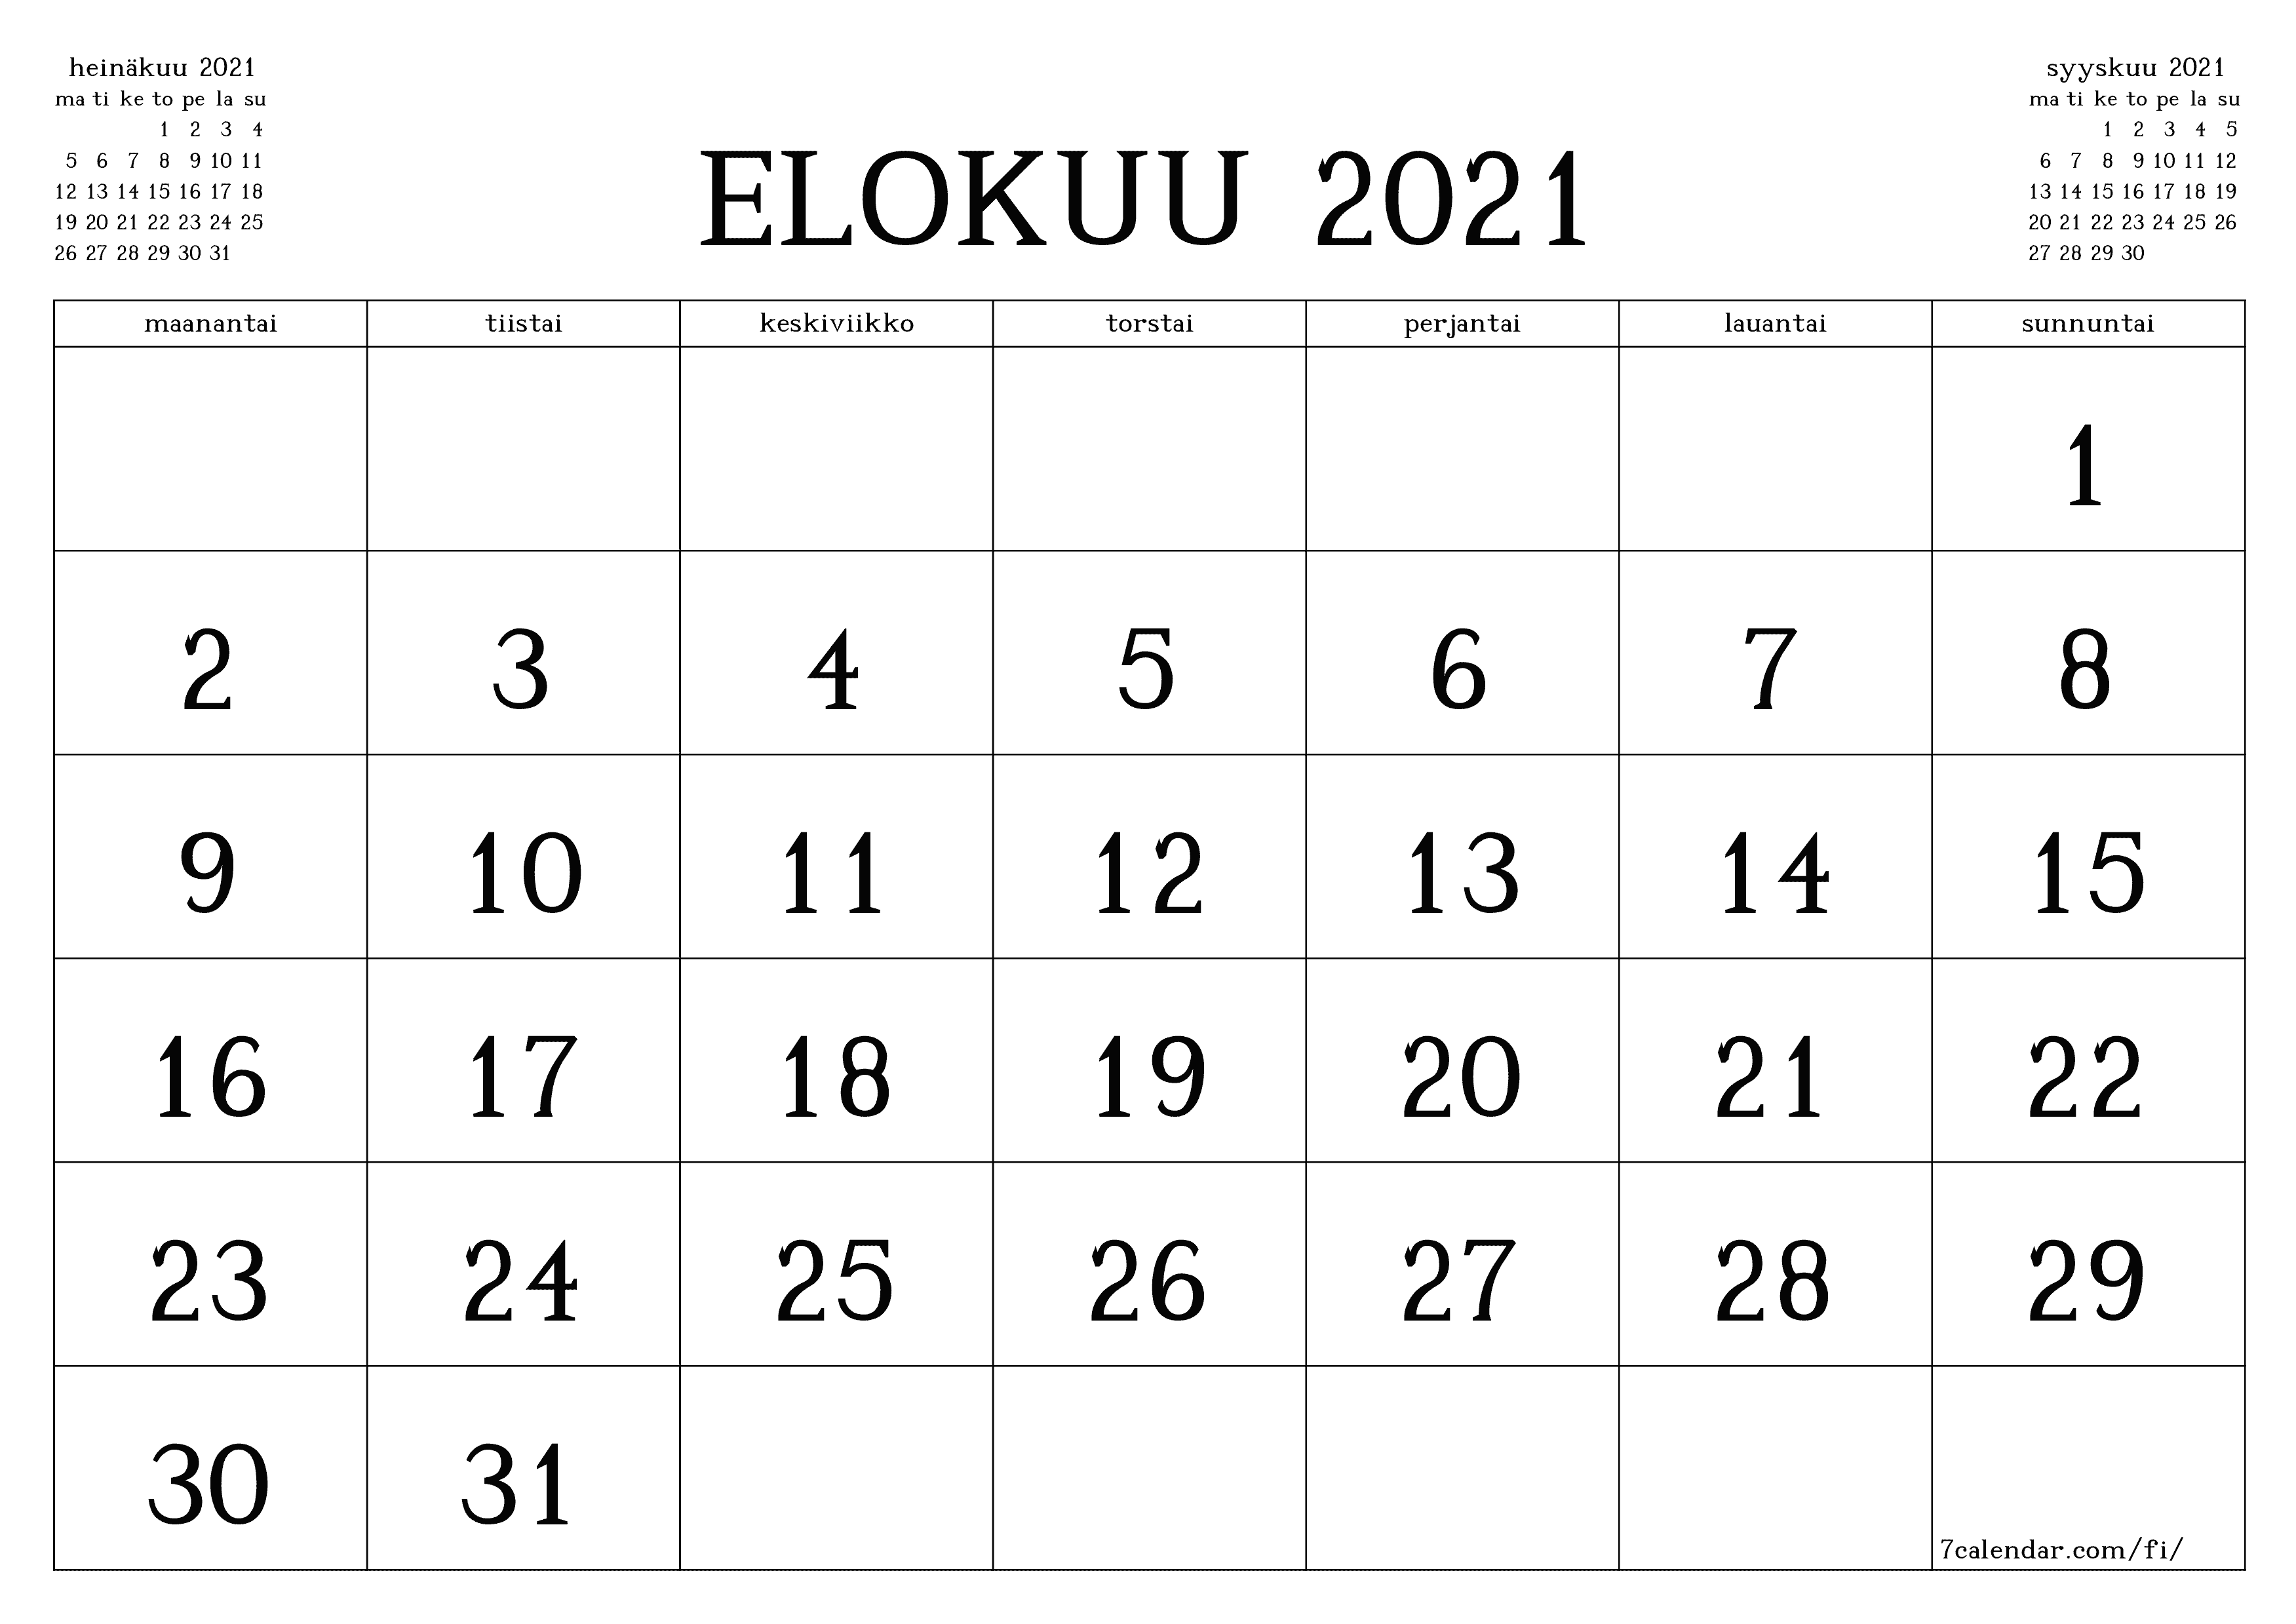 Tyhjennä kuukausittainen suunnittelija kuukaudelle elokuu 2021 muistiinpanoilla, tallenna ja tulosta PDF-muotoon PNG Finnish